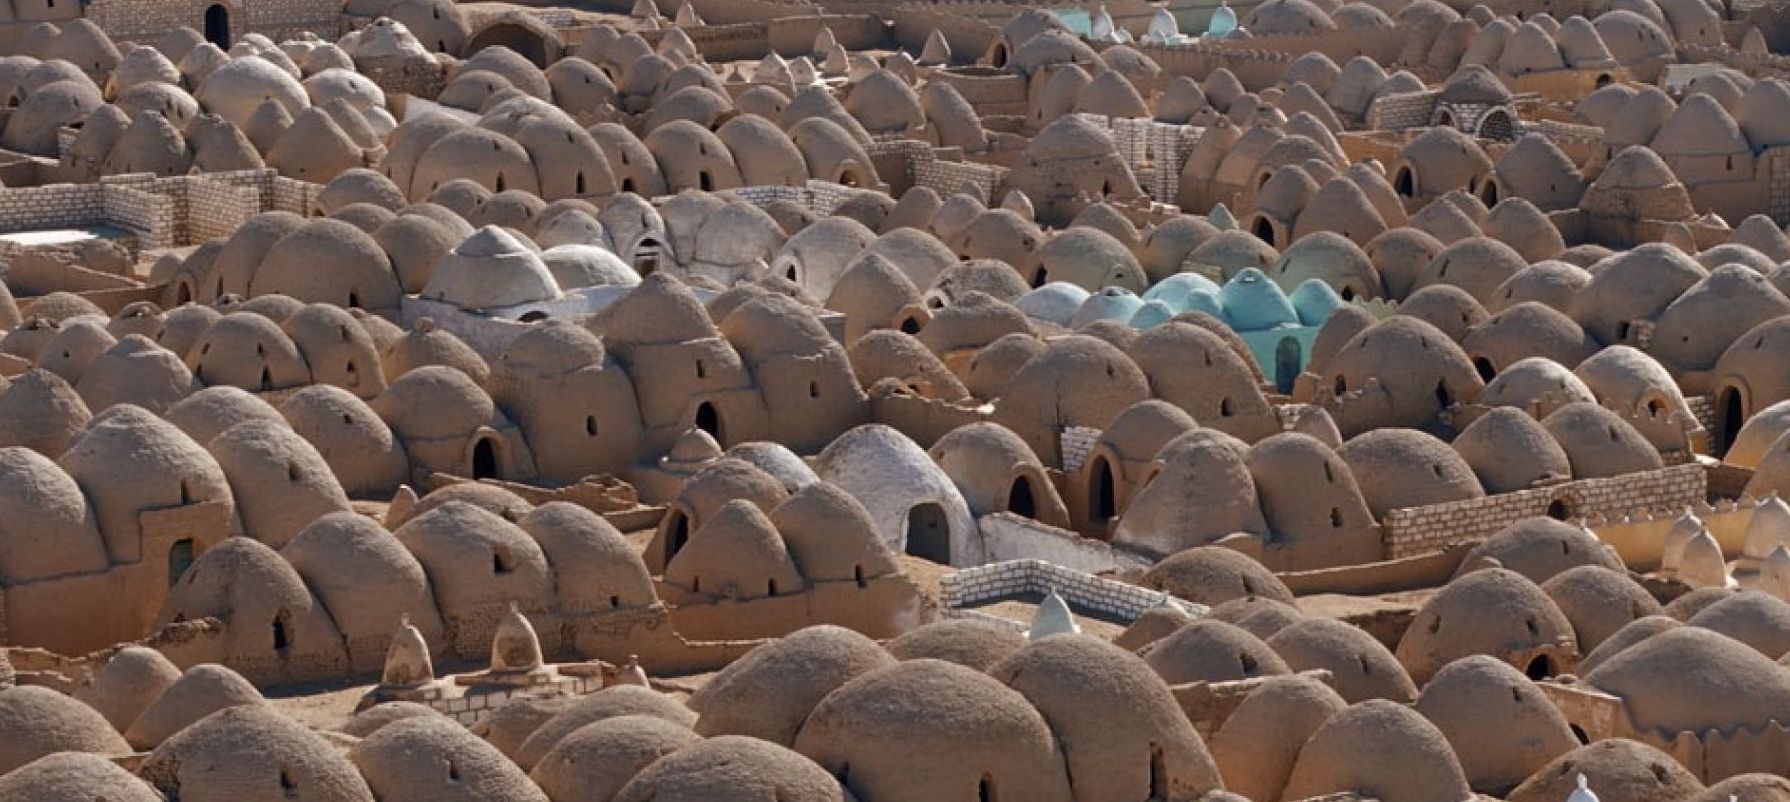 دریای بی پایان قبرها در «شهر مردگان» مصر + عکس